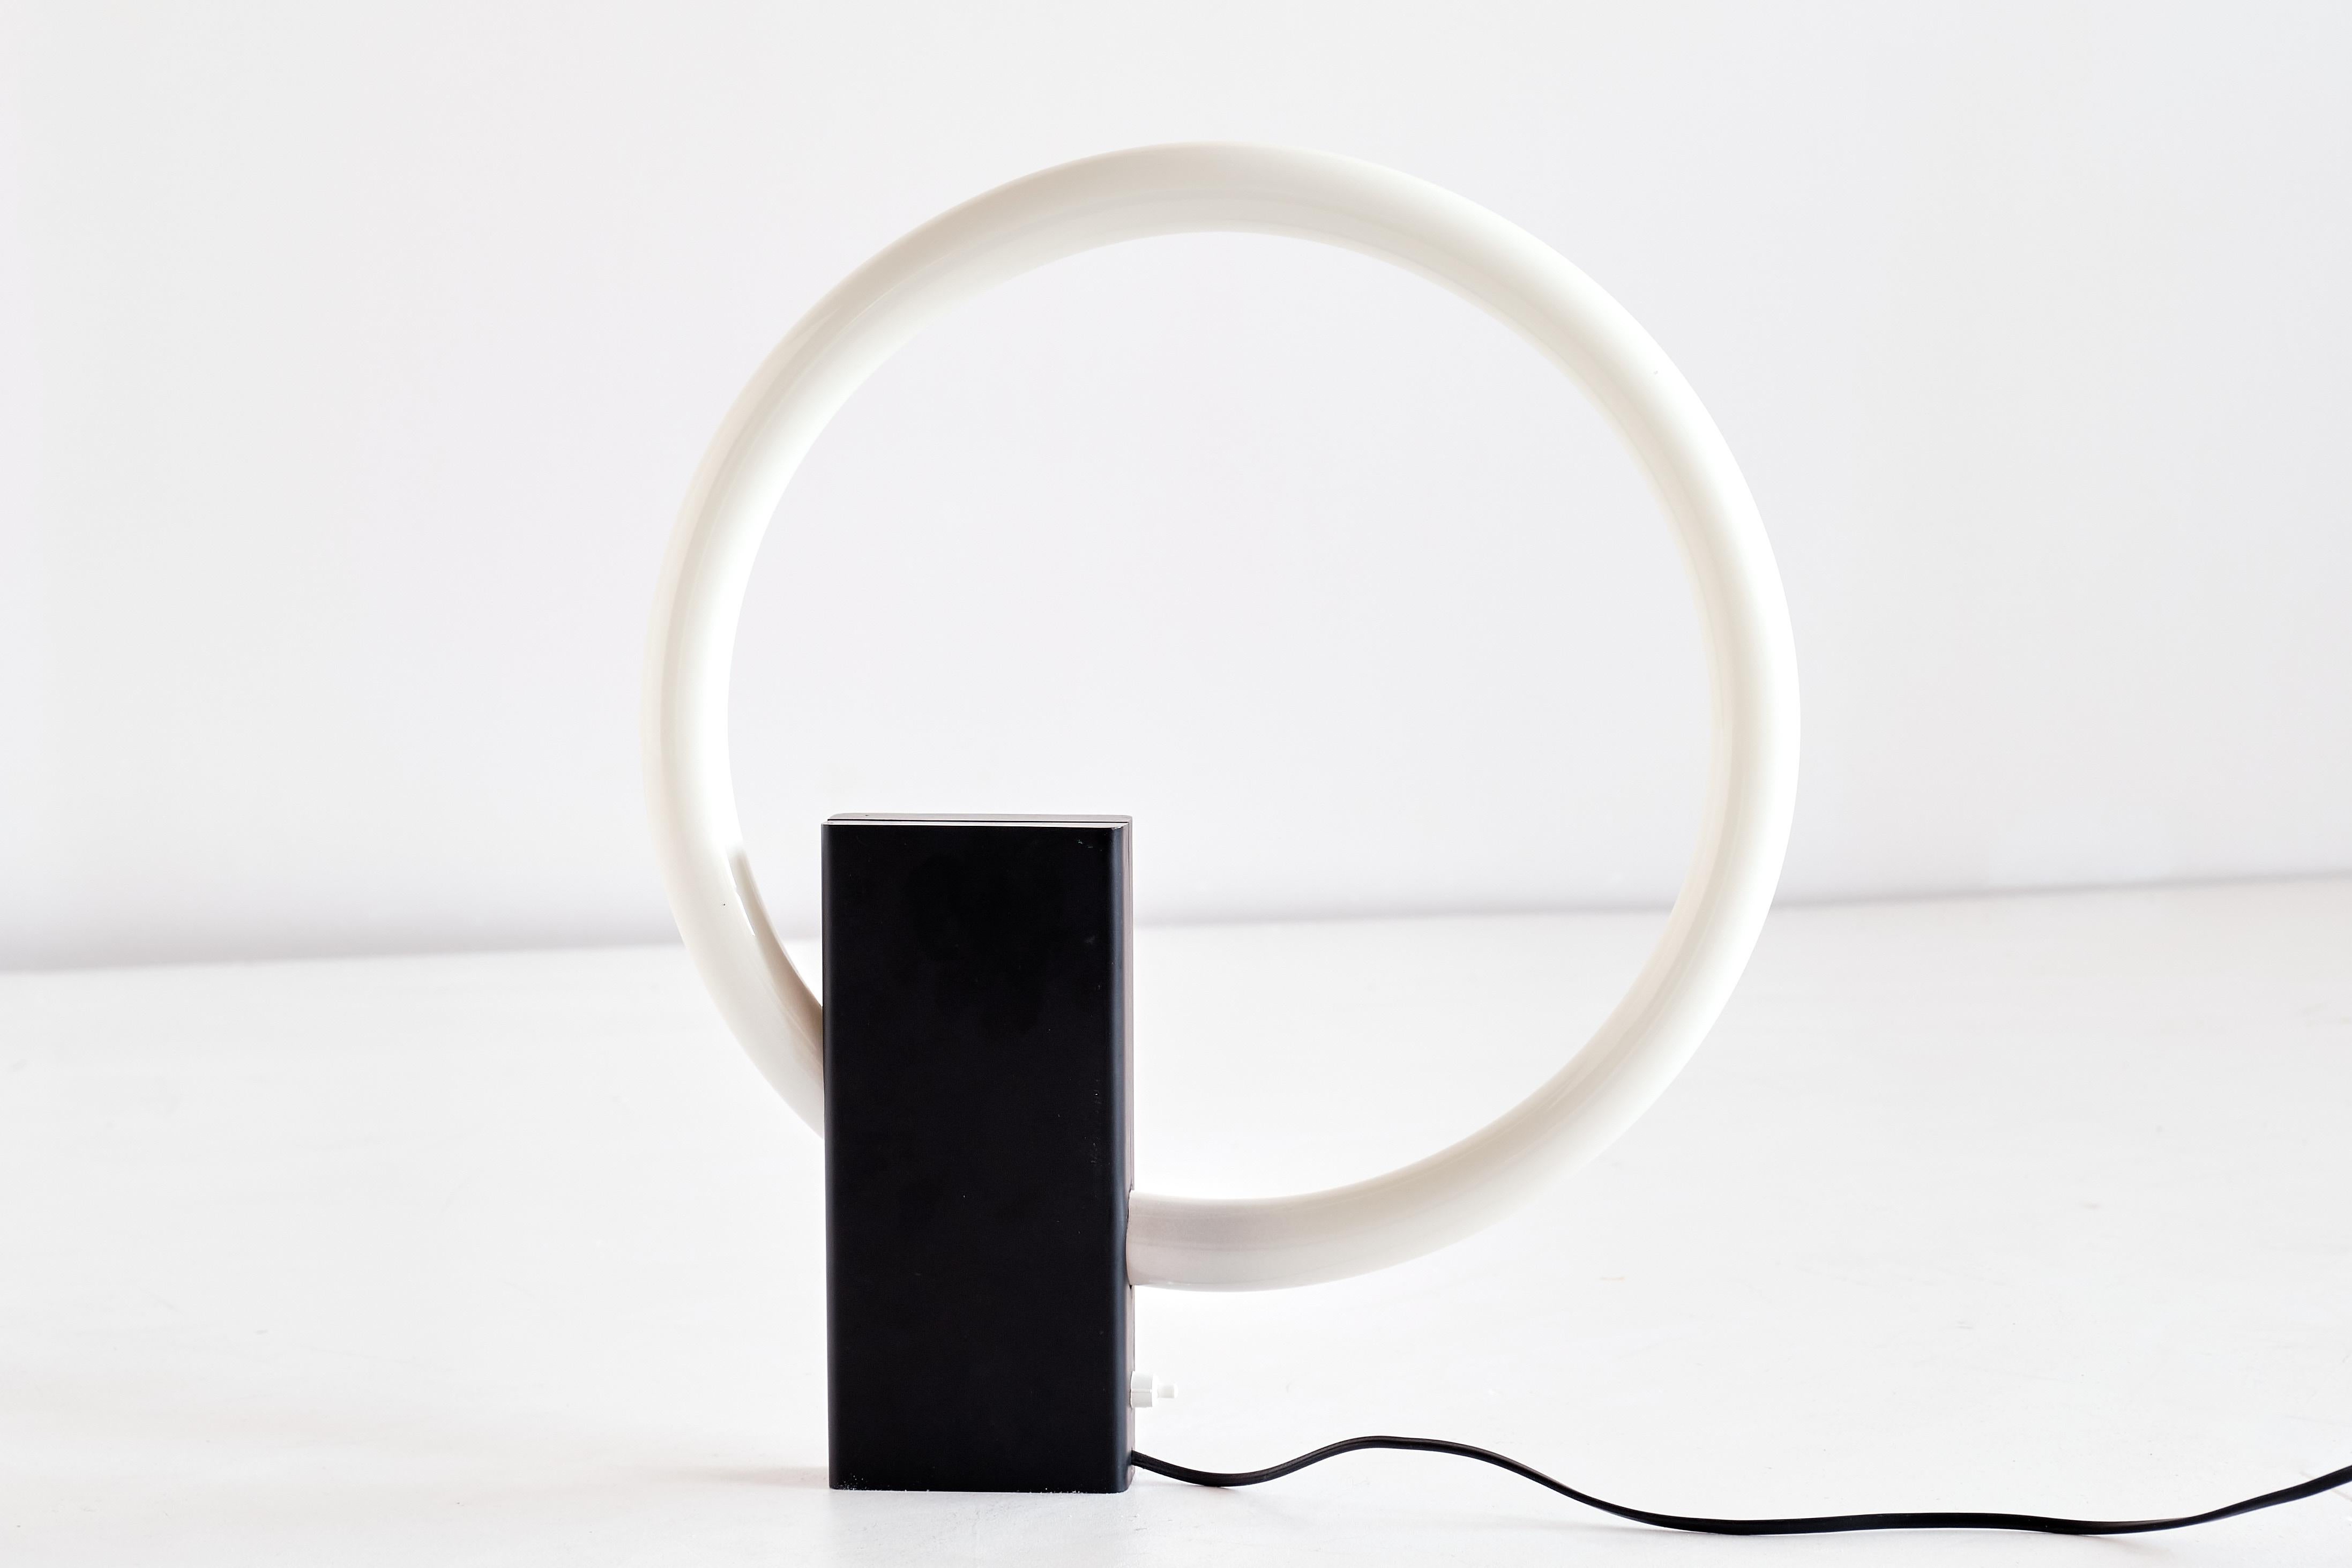 Cette étonnante lampe de table minimaliste a été produite aux Pays-Bas dans les années 1970. L'ampoule circulaire est fixée à une base verticale rectangulaire en acier laqué noir. Le design (post) moderniste de cette pièce rare est étroitement lié à